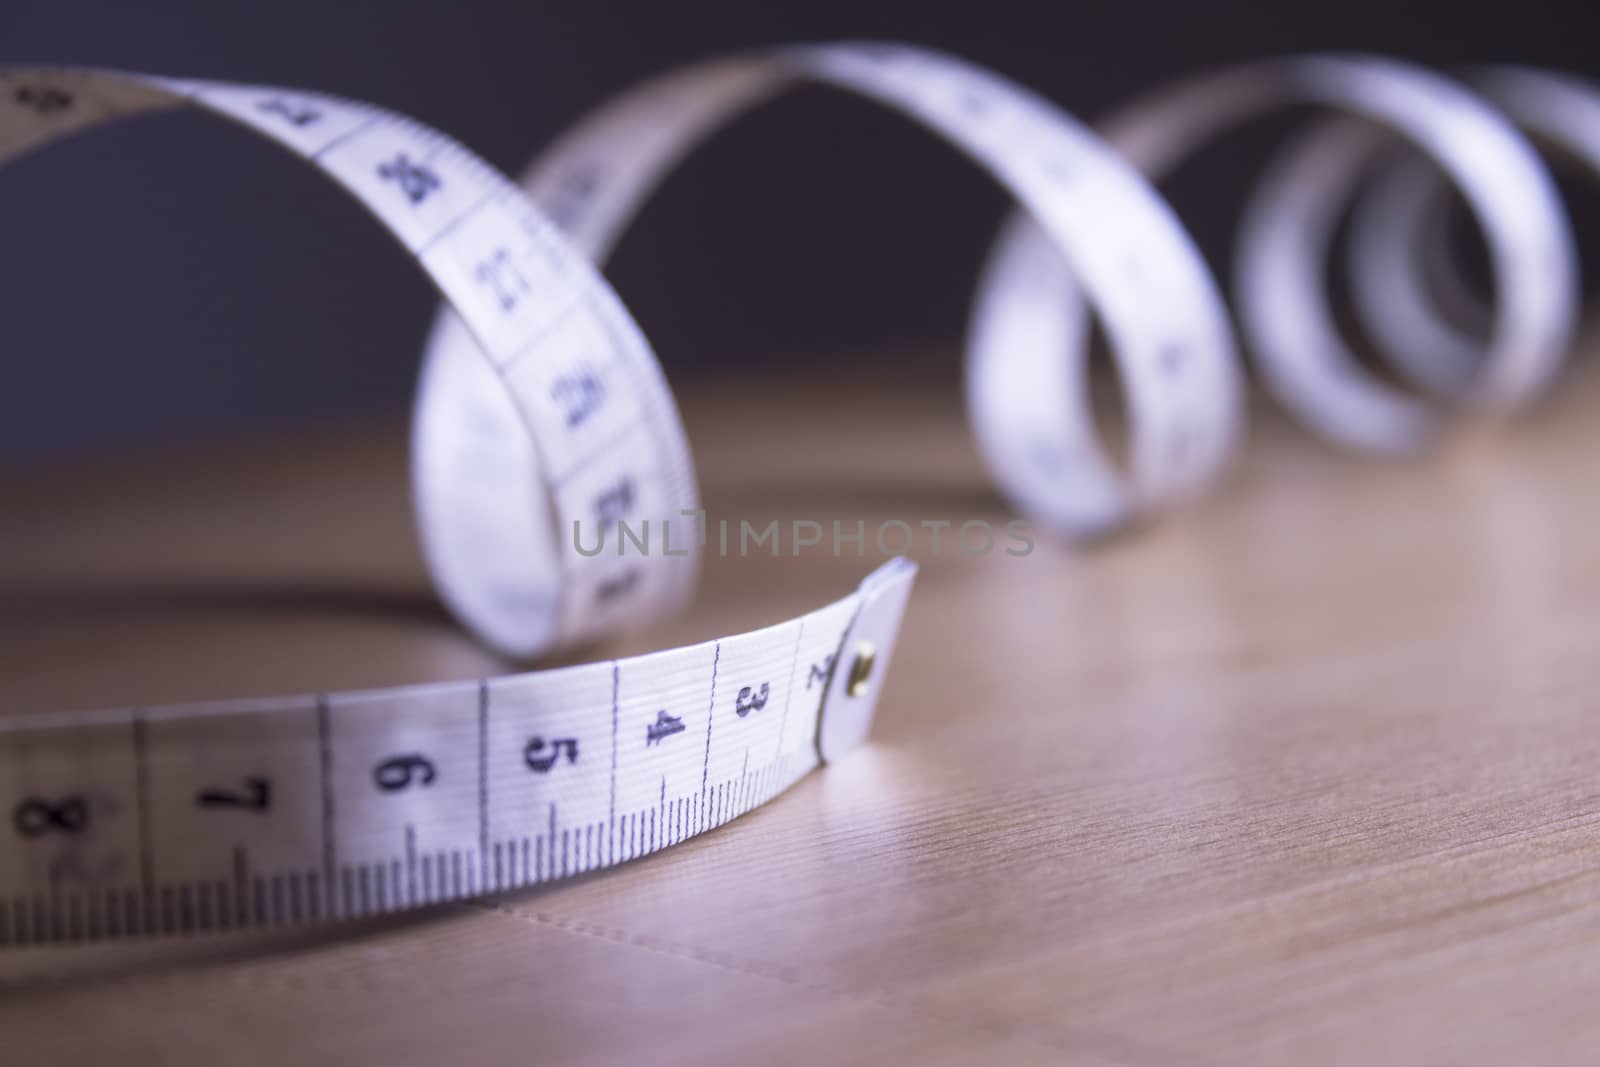 Tape measure in meters by GemaIbarra